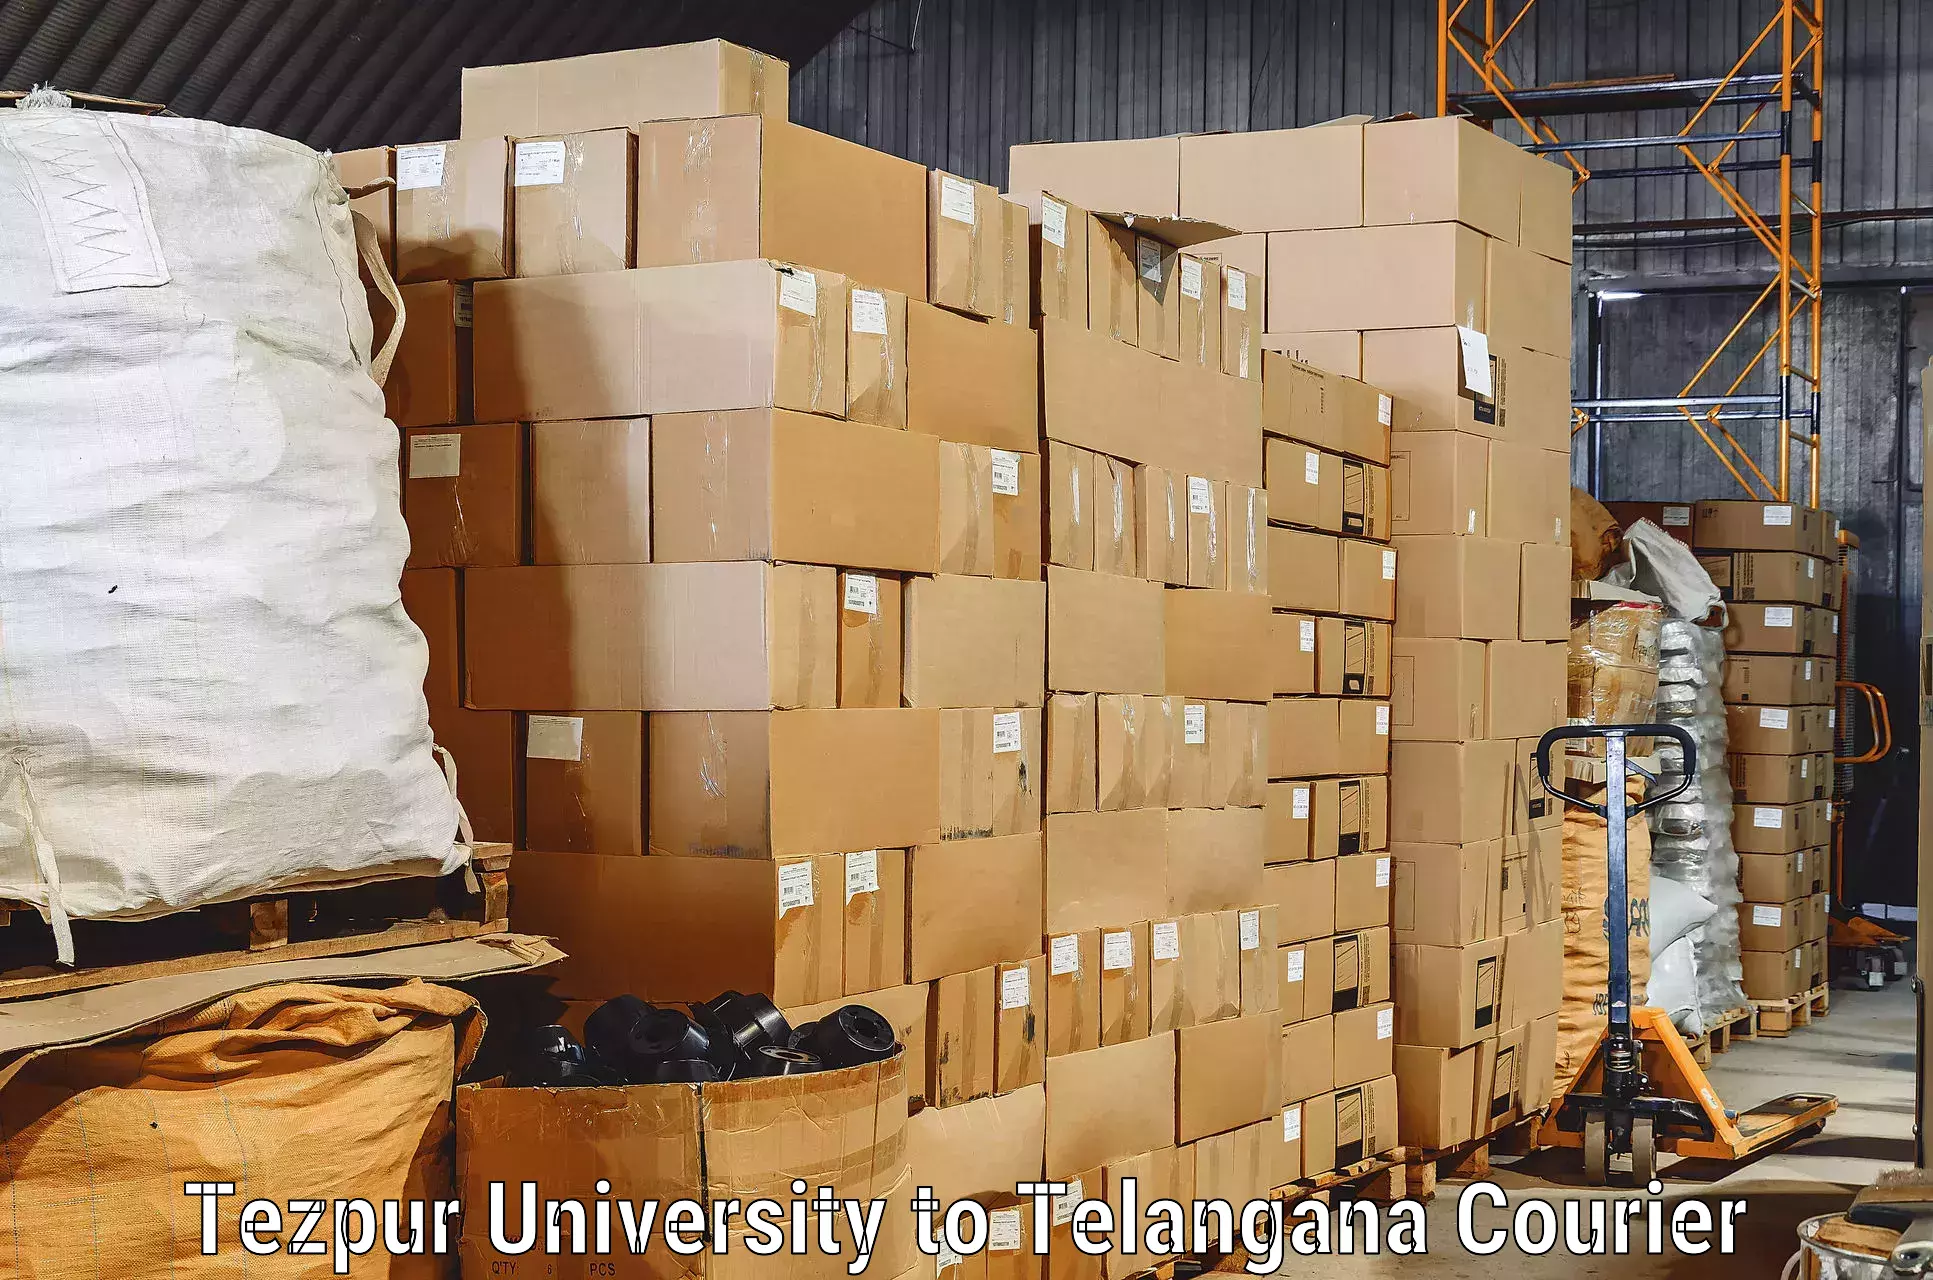 Furniture transport services Tezpur University to Gangadhara